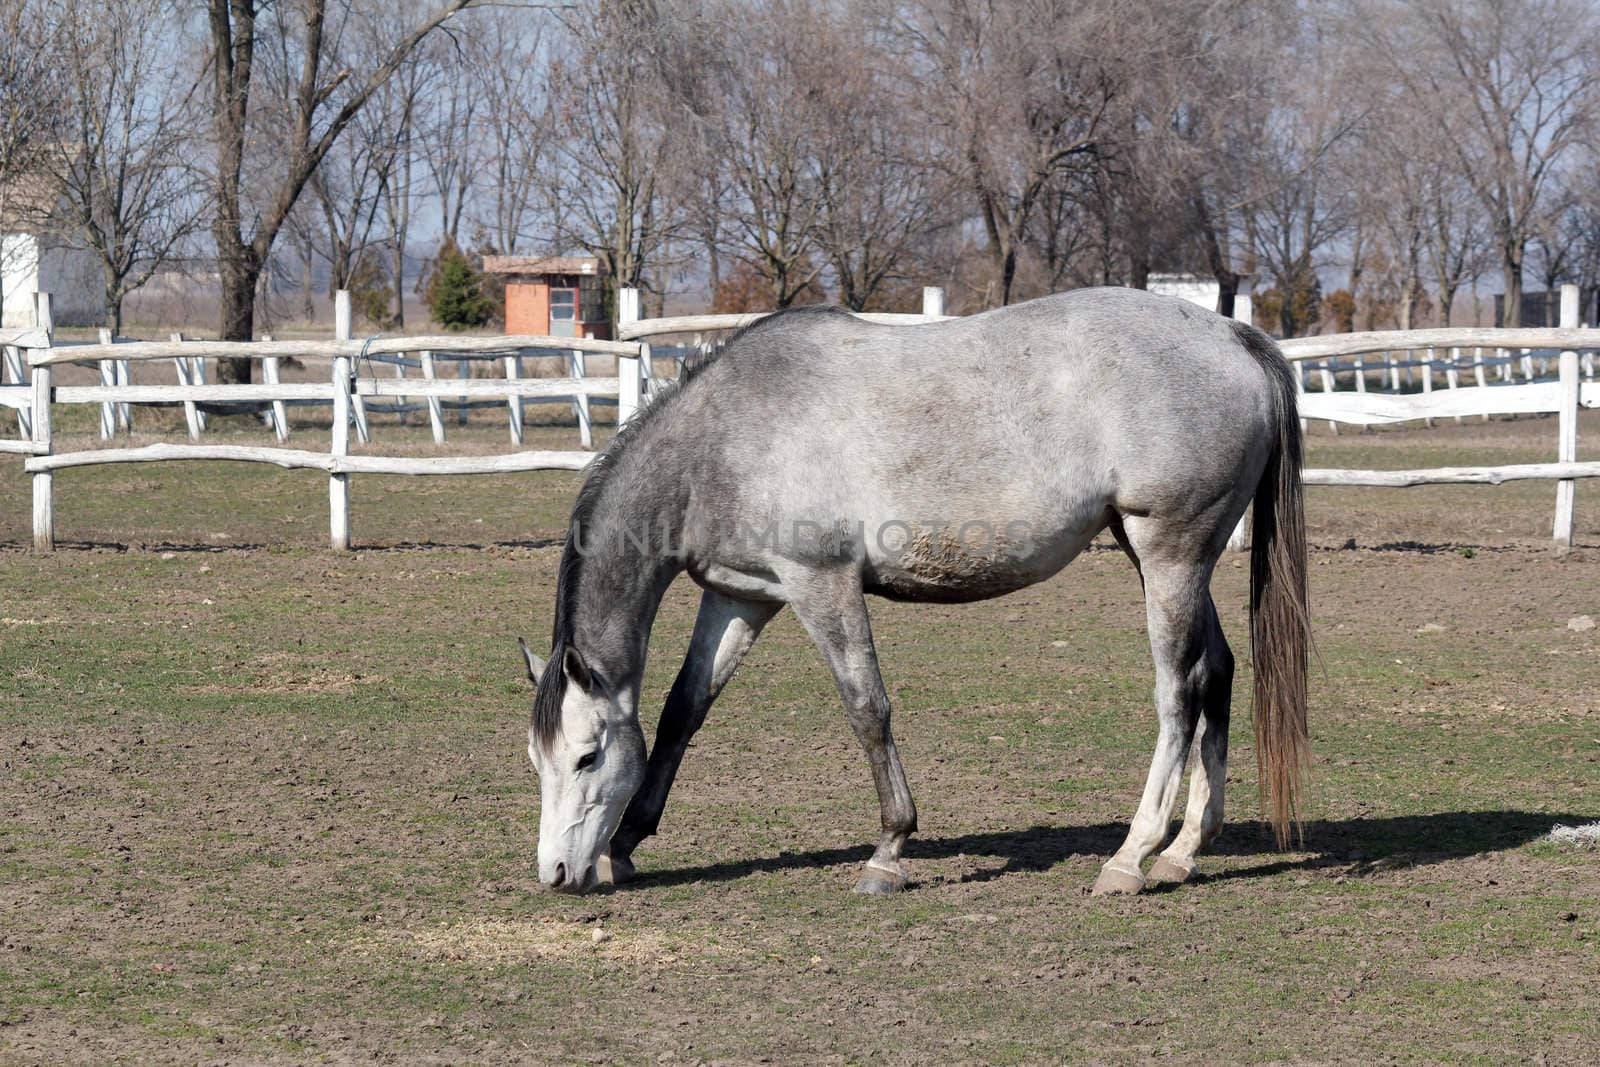 grey horse in corral farm scene